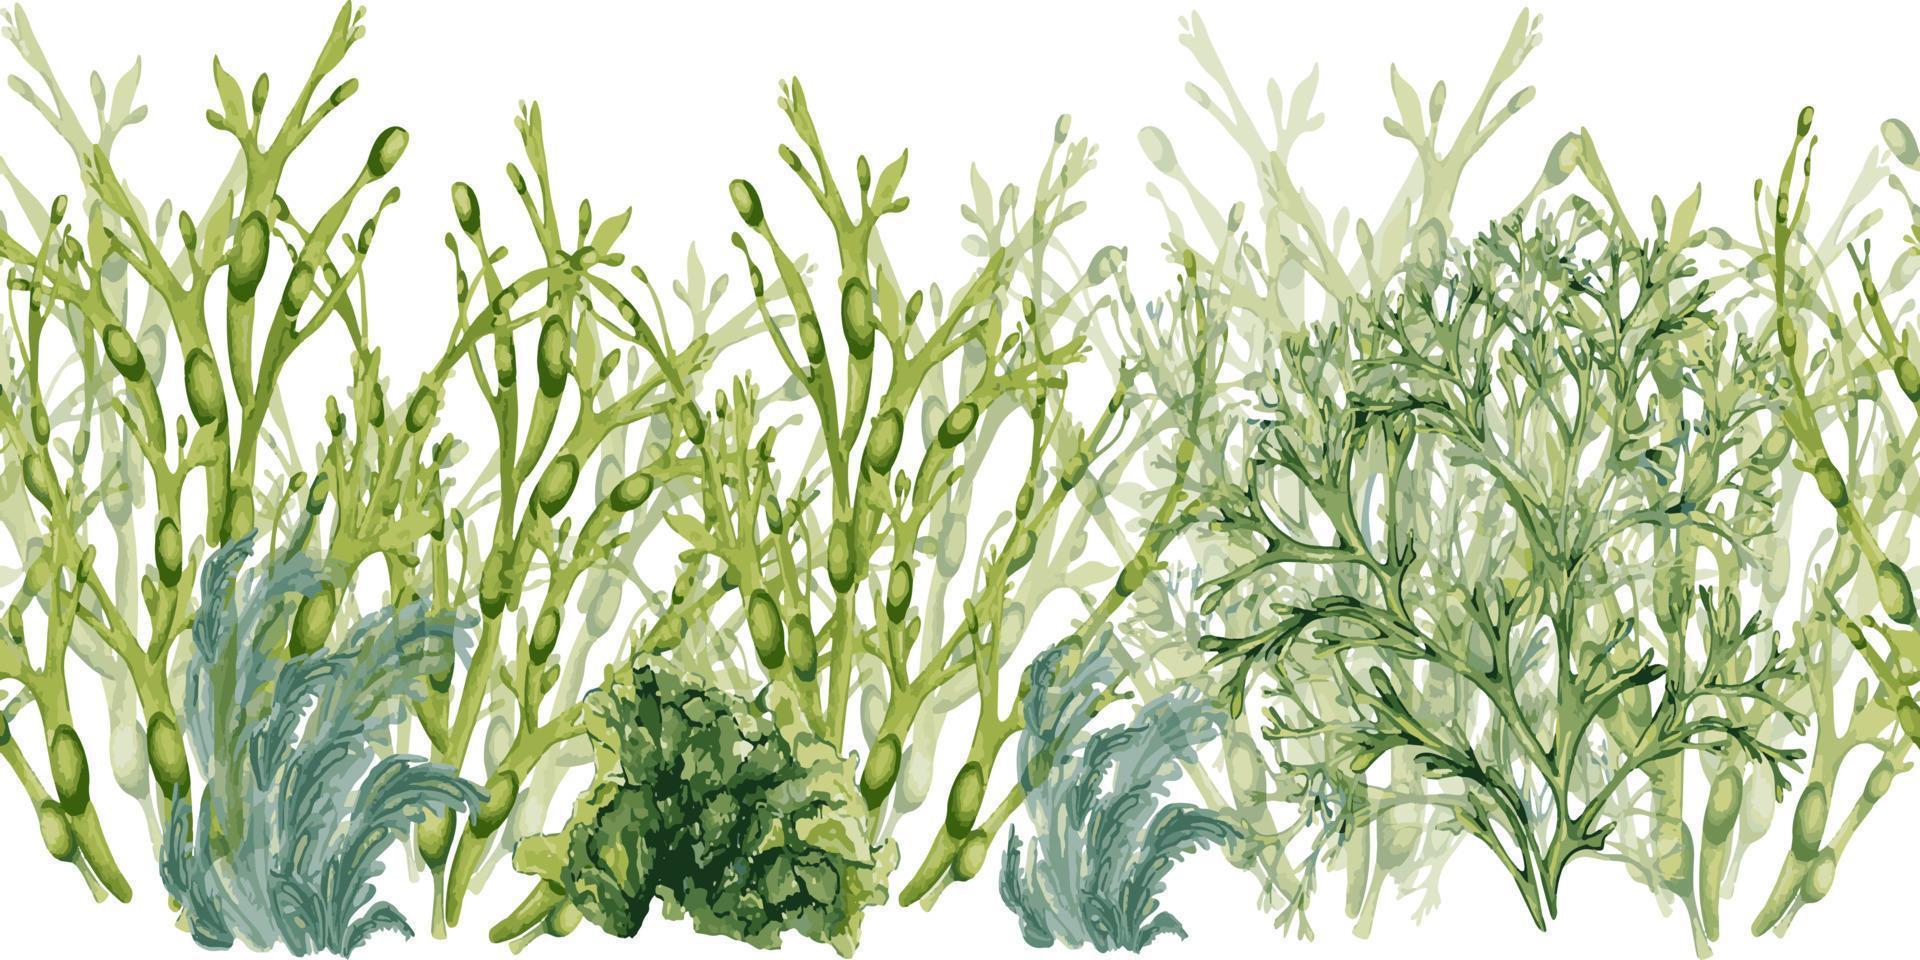 sömlös styrelse av grön hav växter vattenfärg isolerat på vit bakgrund. ascophyllum, kelp, ört tång hand ritade. design element för paket, märka, reklam, omslag, marin samling vektor